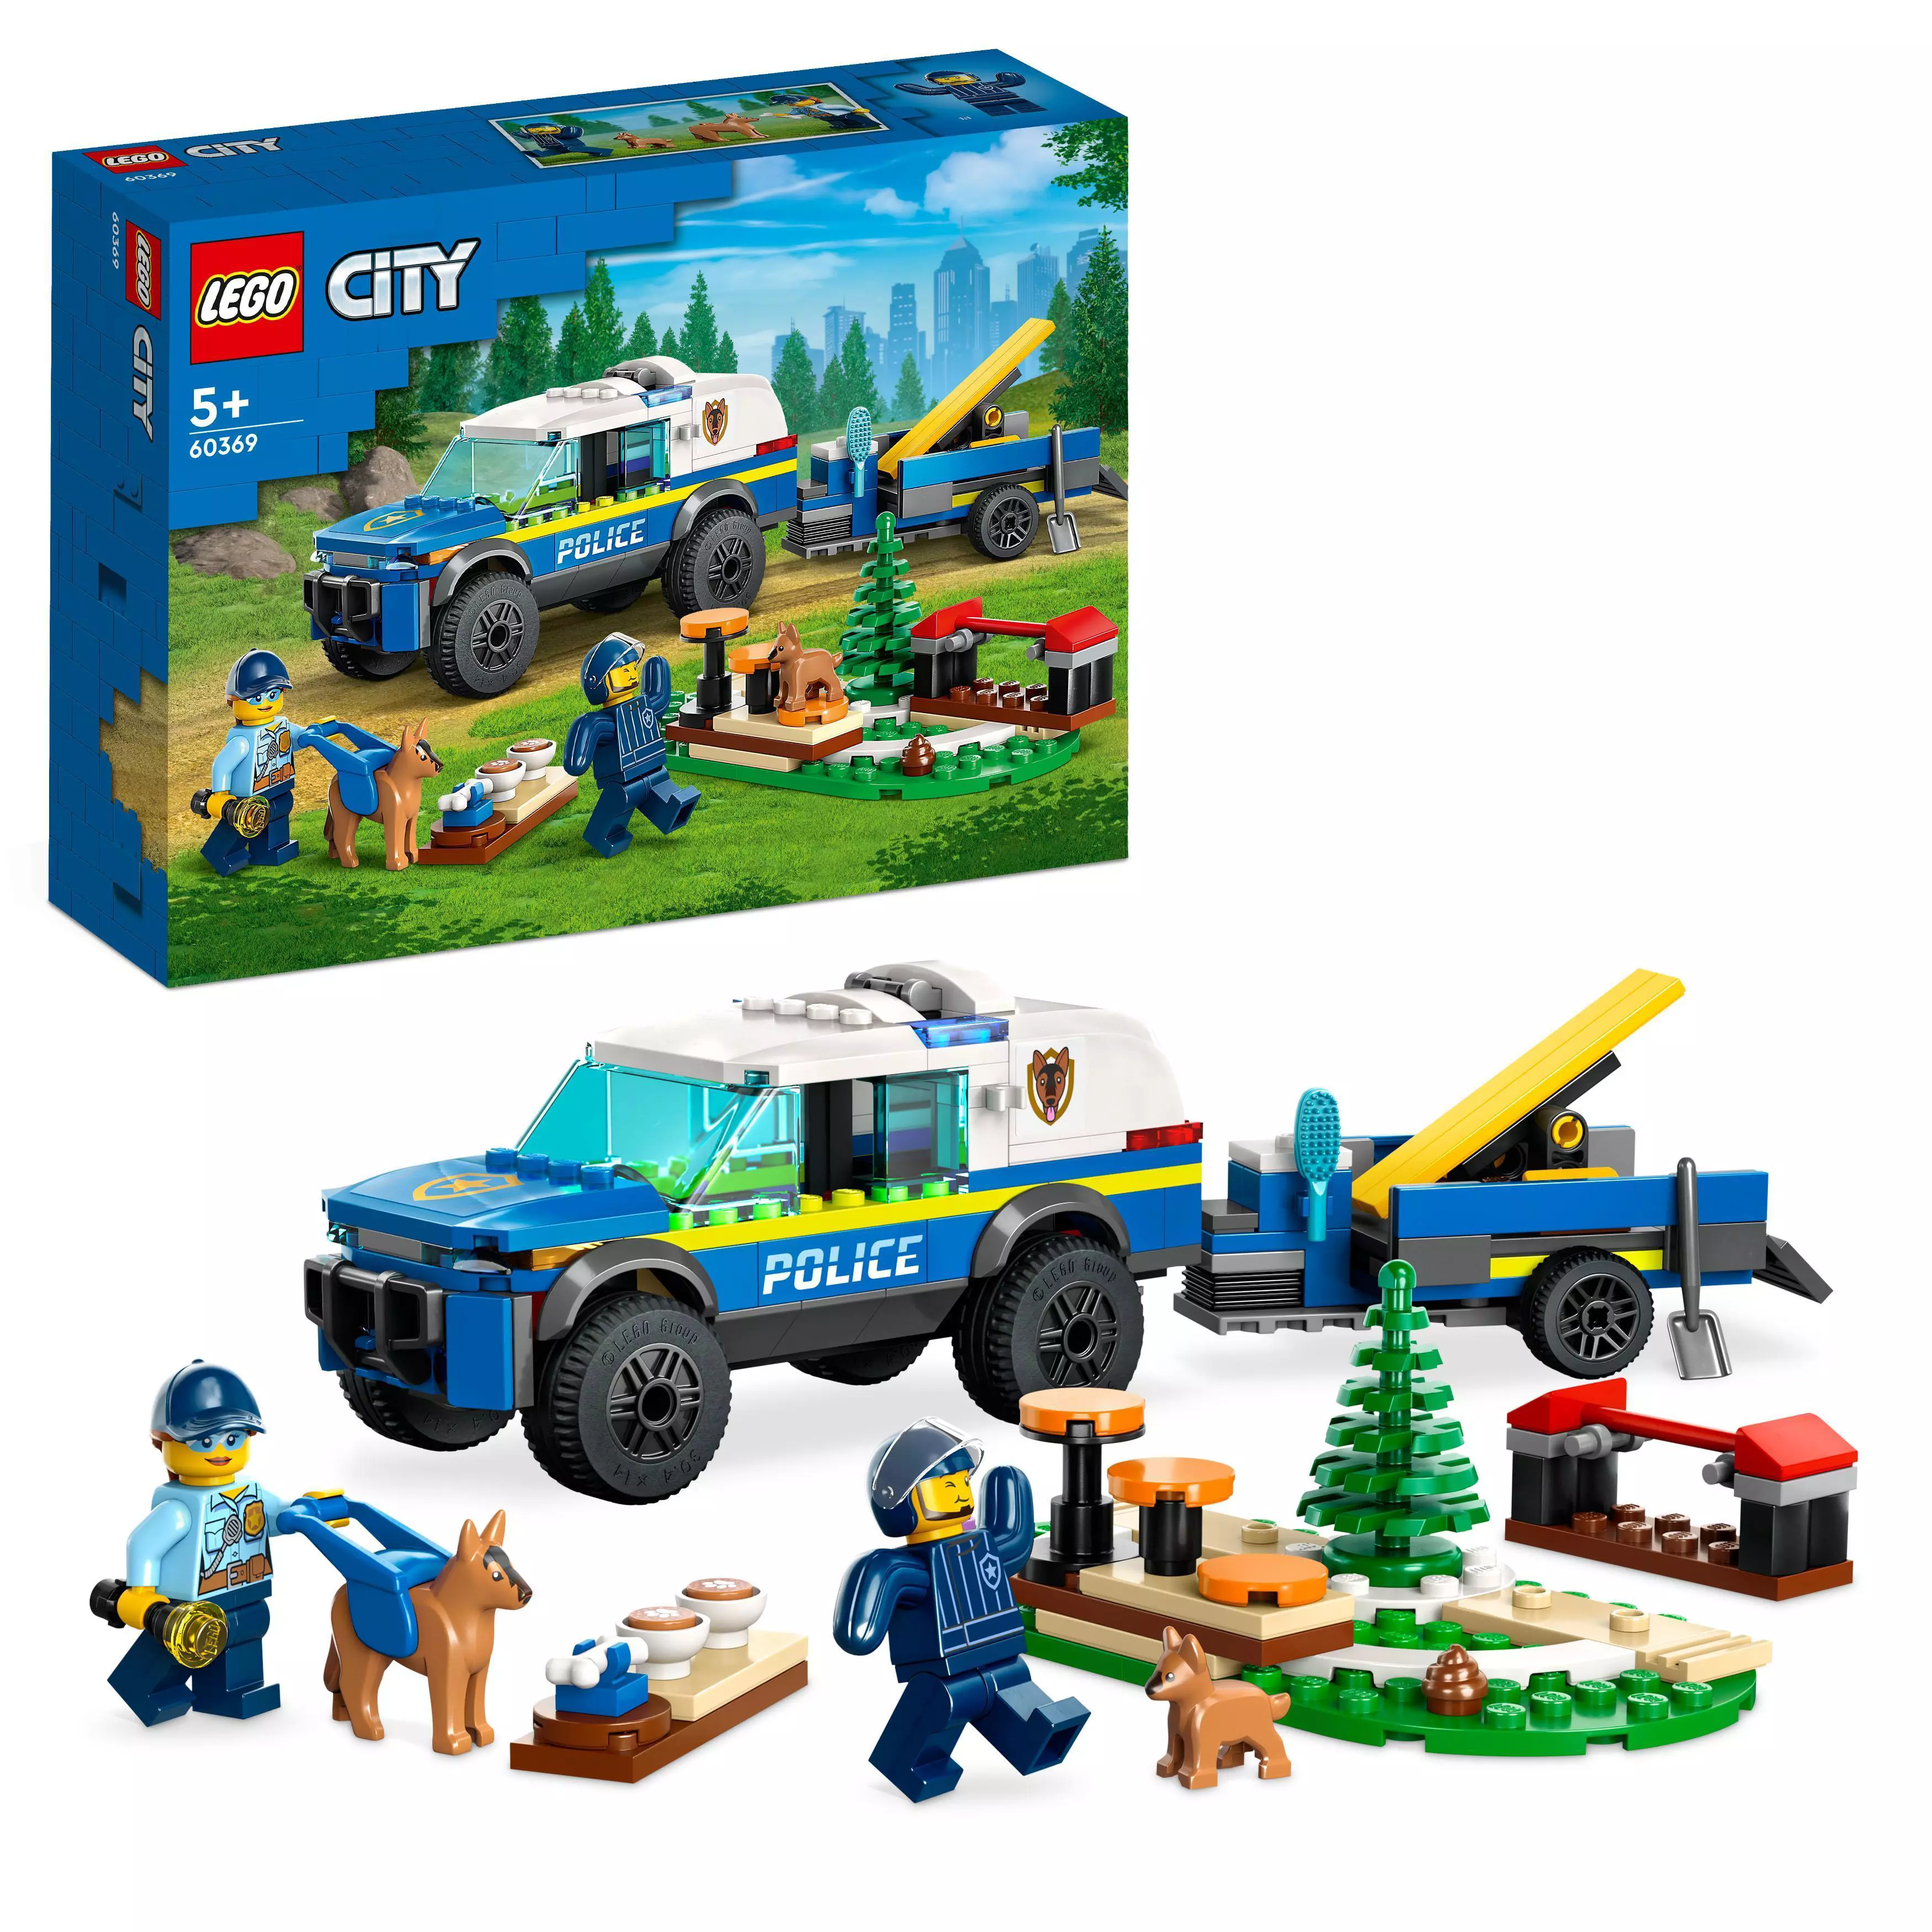 Lego City Siirrettävä Poliisikoirien Koulutusrata 60369